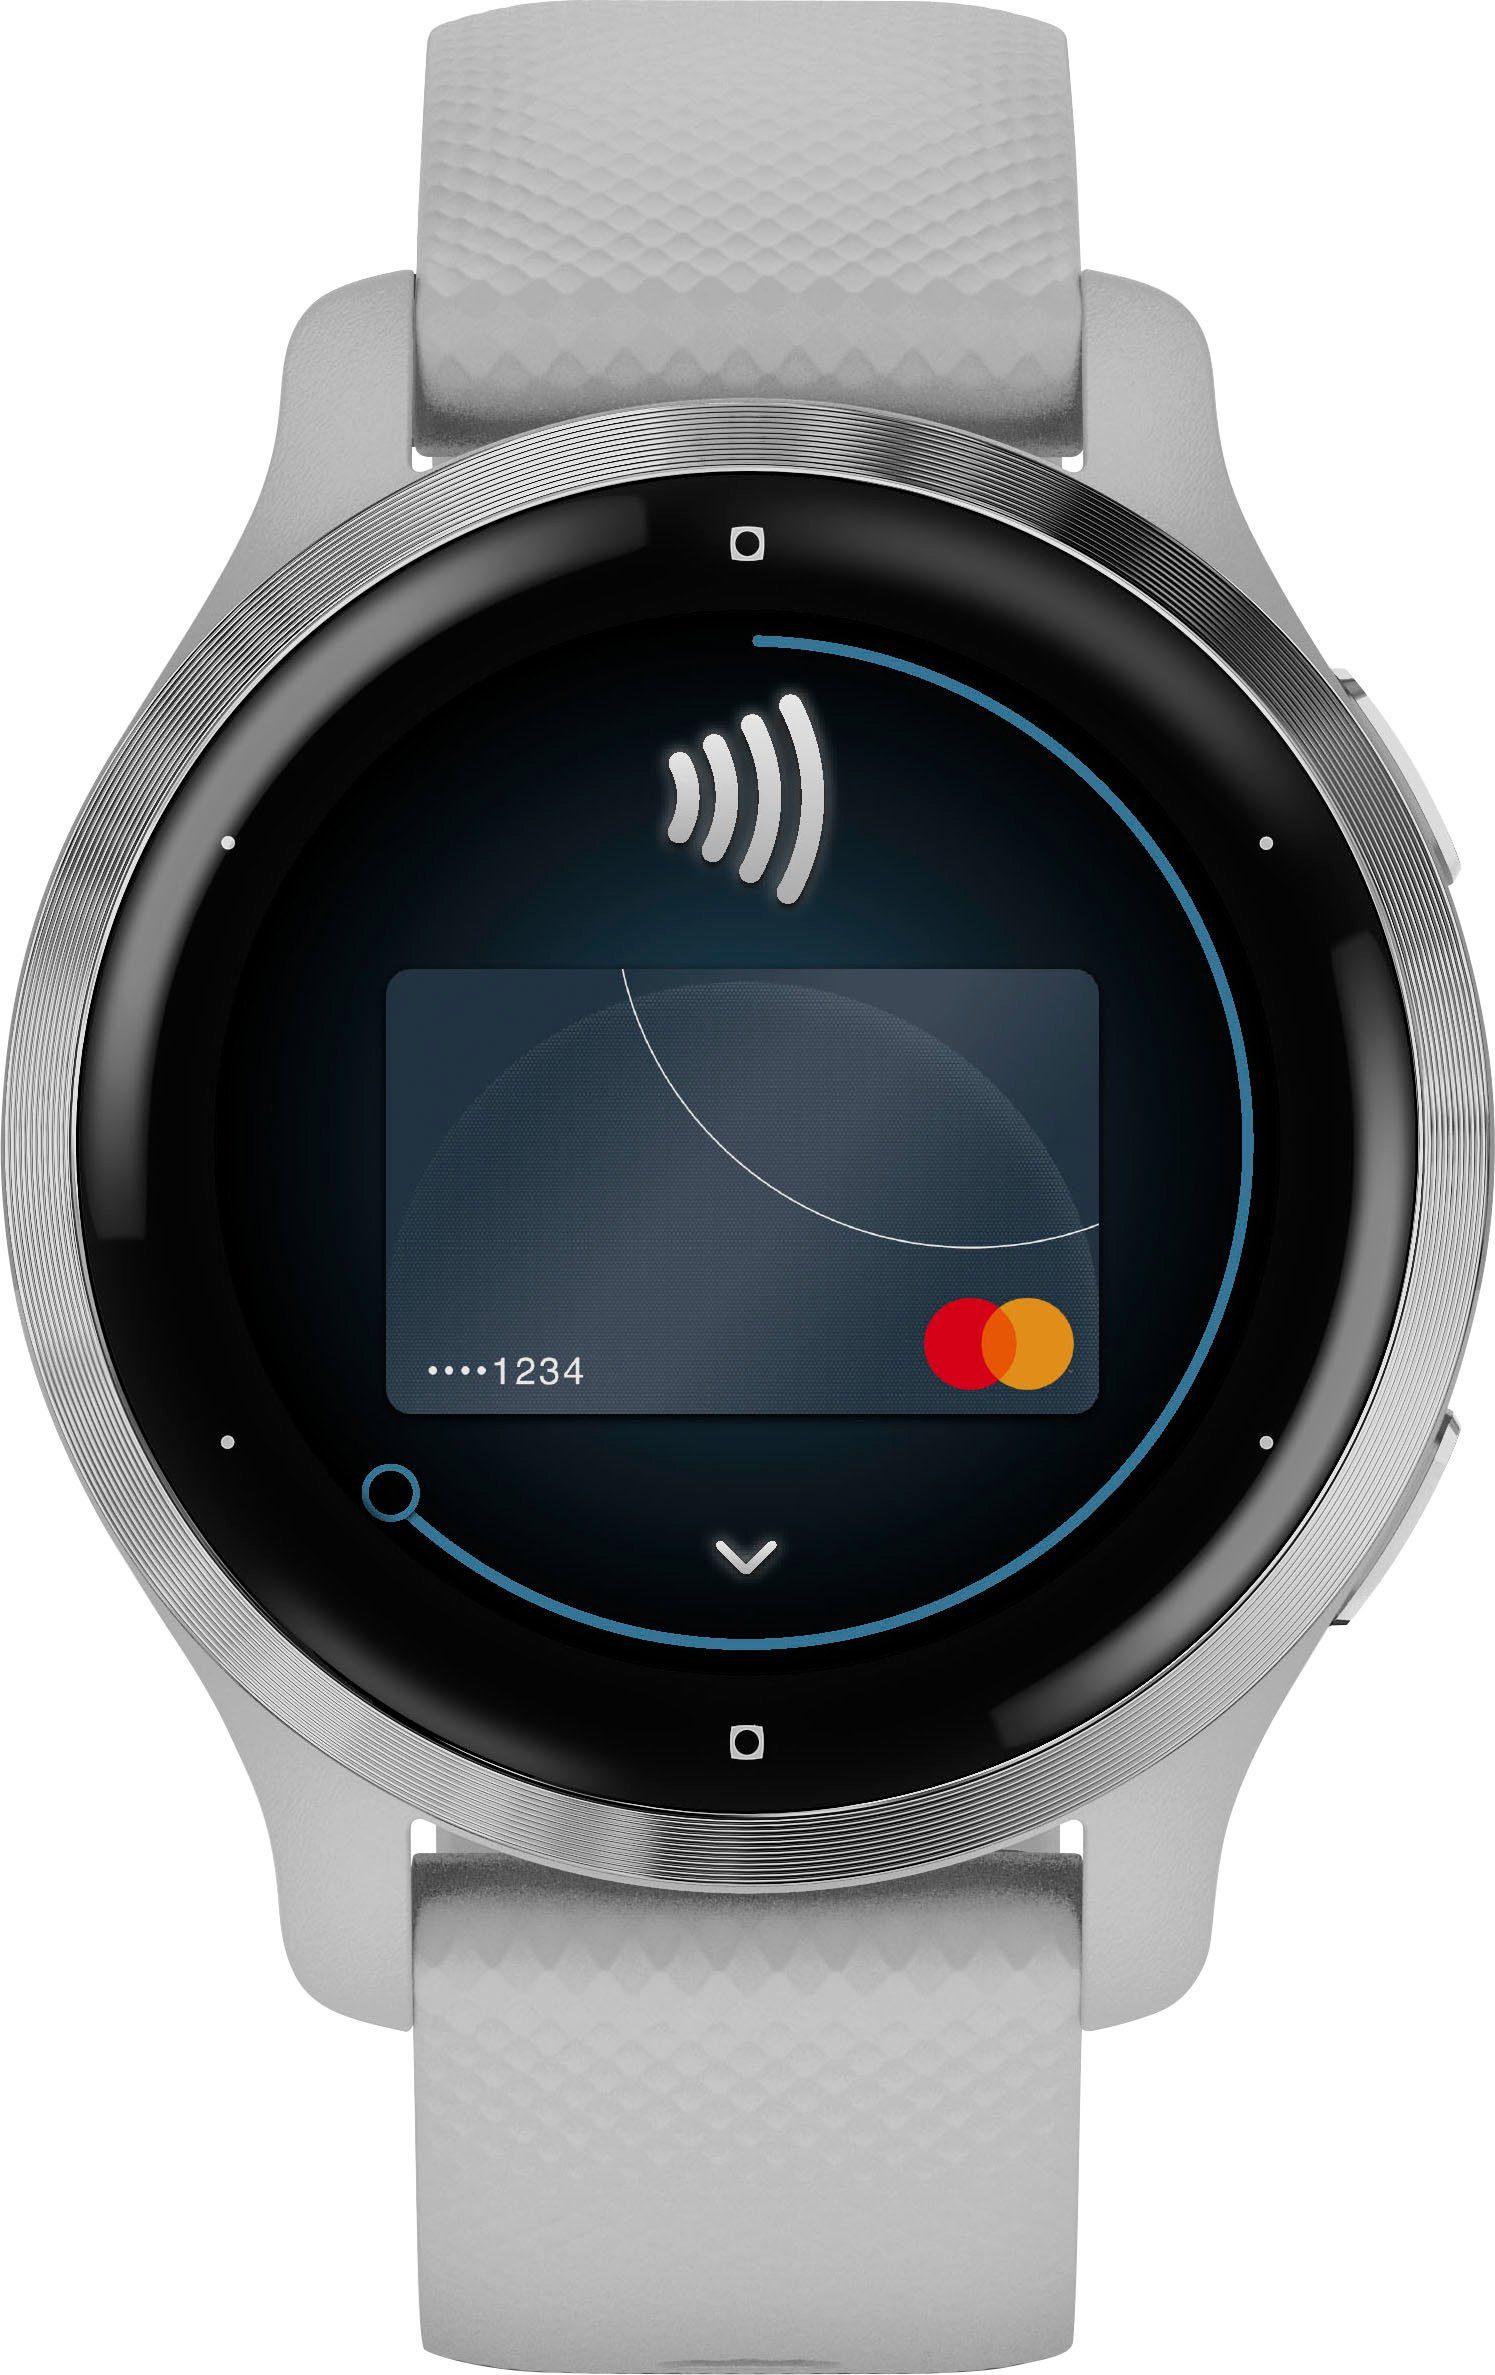 Garmin Venu cm/1,1 (2,8 Zoll), hellgrau vorinstallierten Smartwatch hellgrau 25 | 2S Sport-Apps